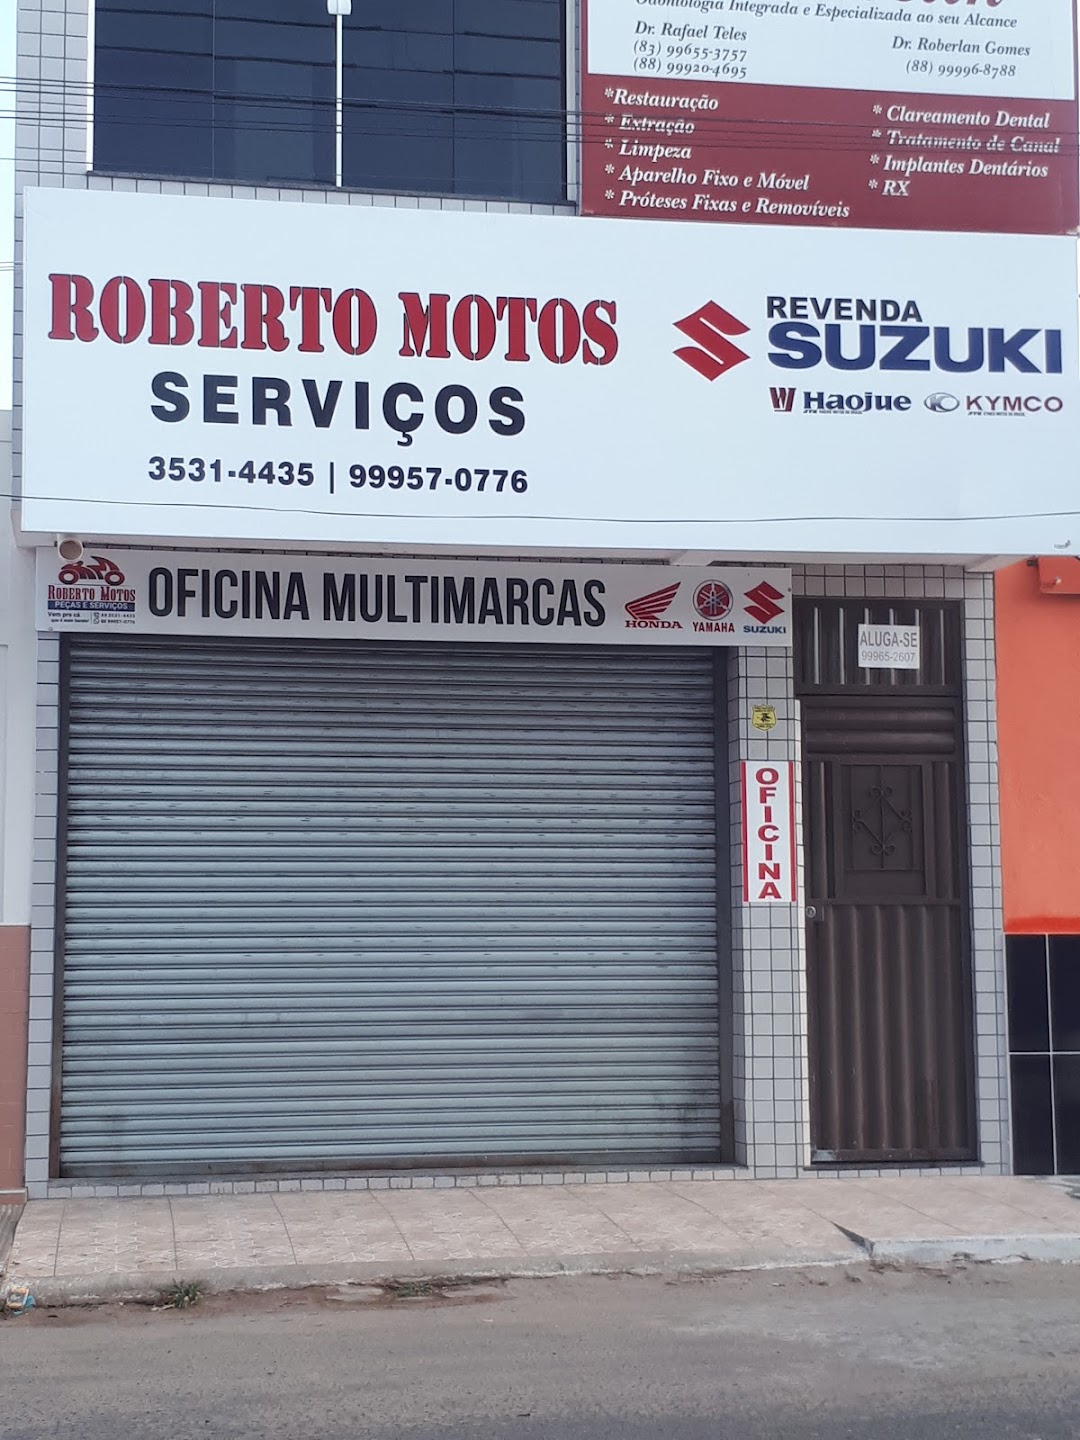 Roberto Motos